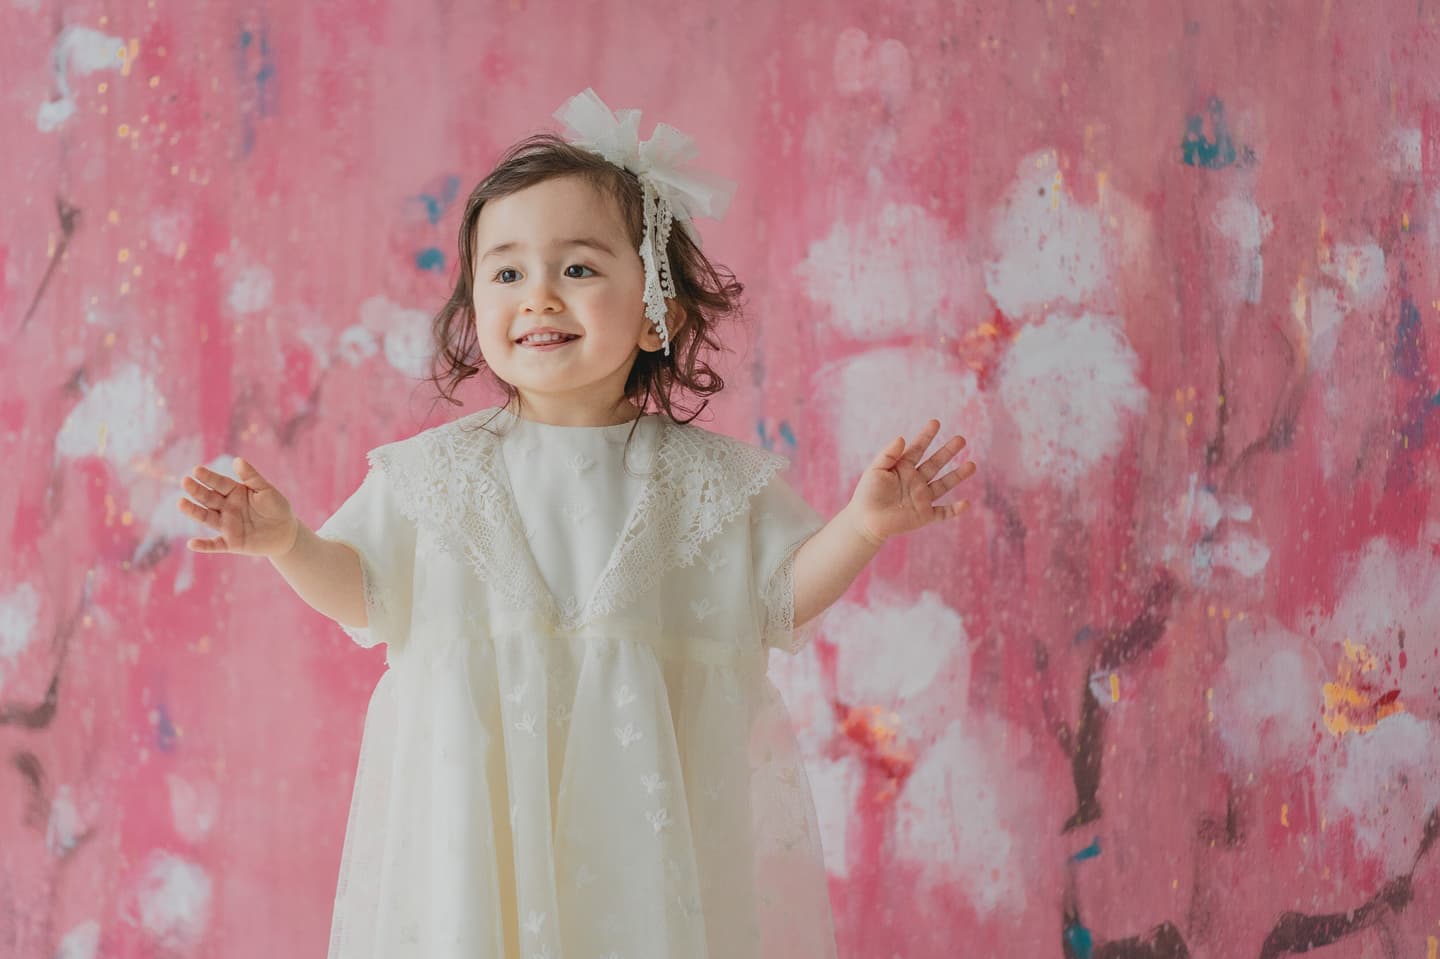 花柄の壁紙の前で白いドレスを着た女の子の写真